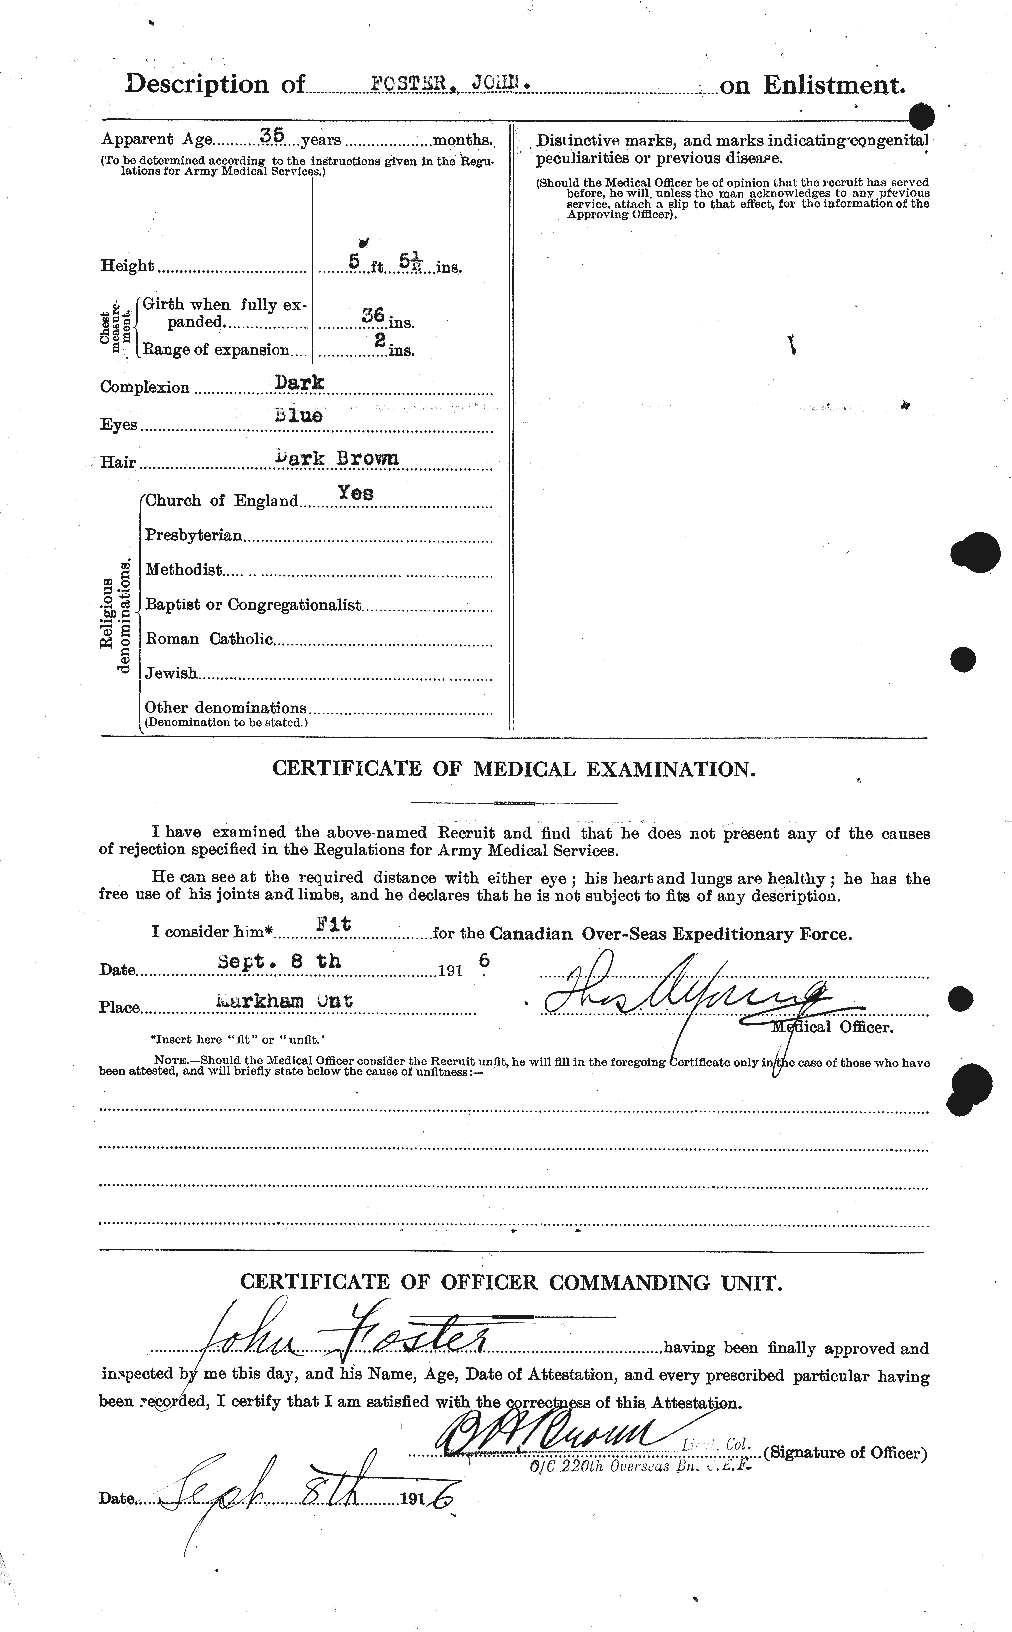 Dossiers du Personnel de la Première Guerre mondiale - CEC 333348b